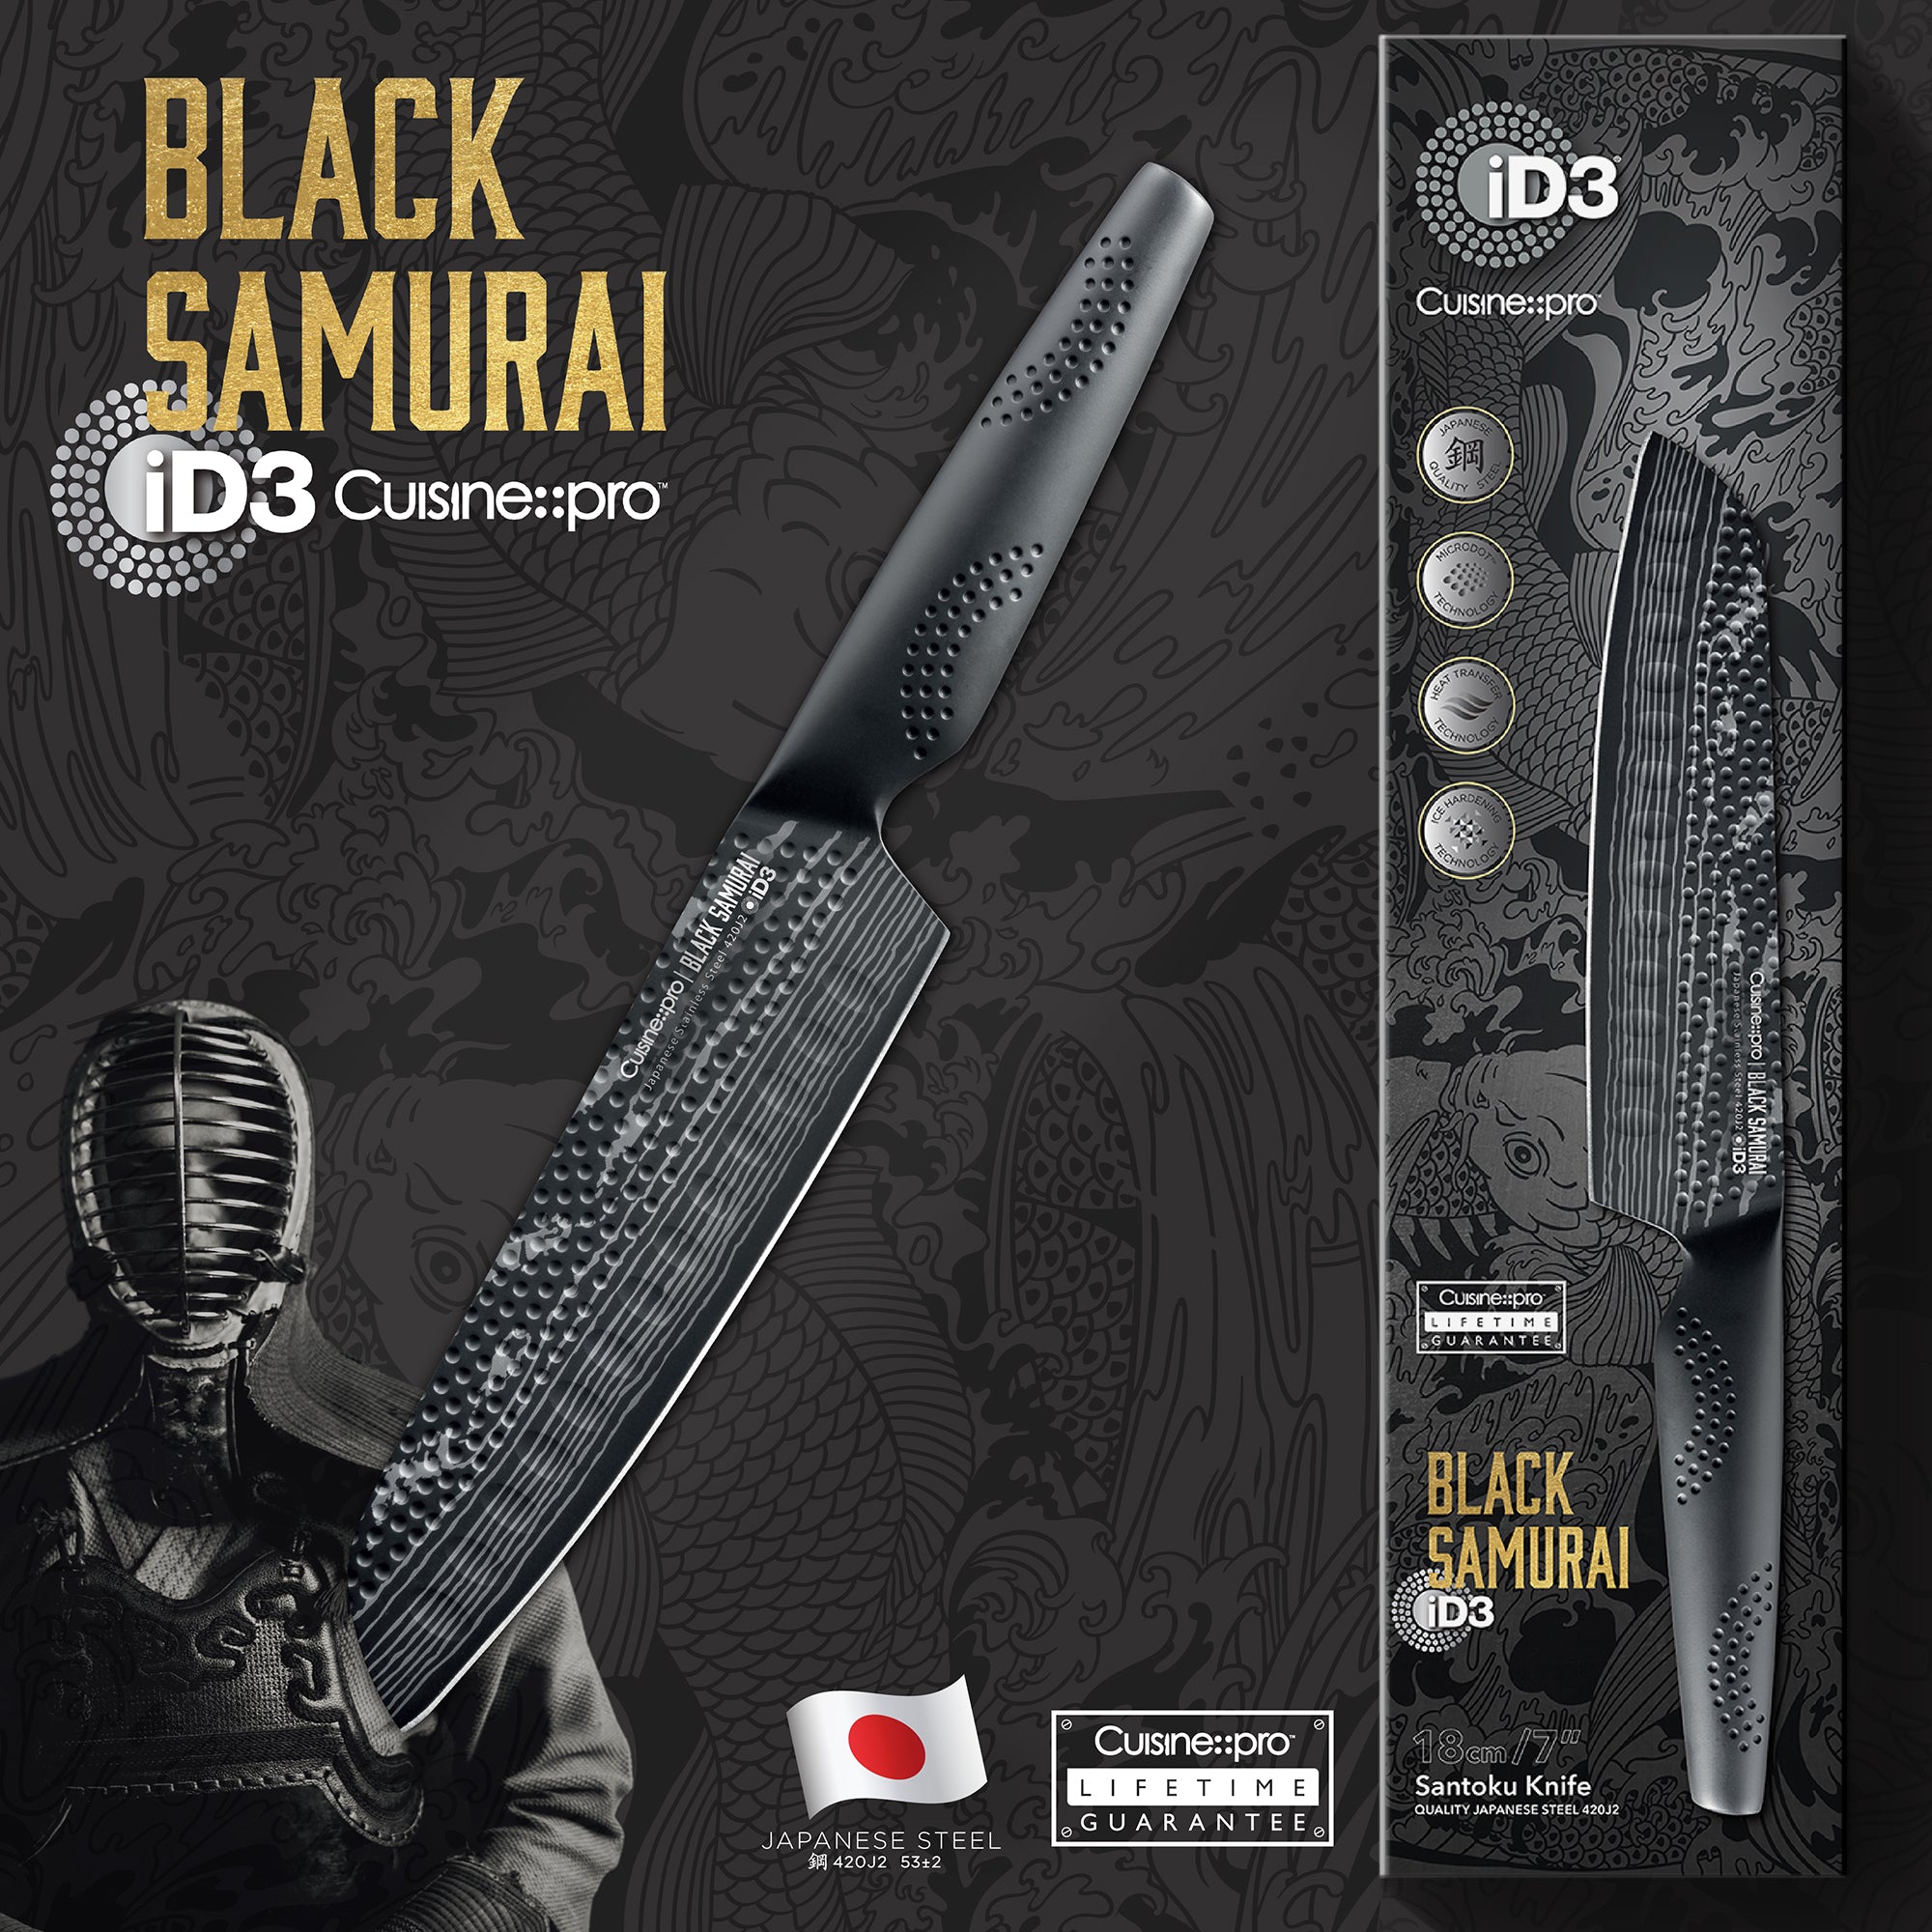 Cuisine::pro ID3 Black Samurai 7 Santoku Knife